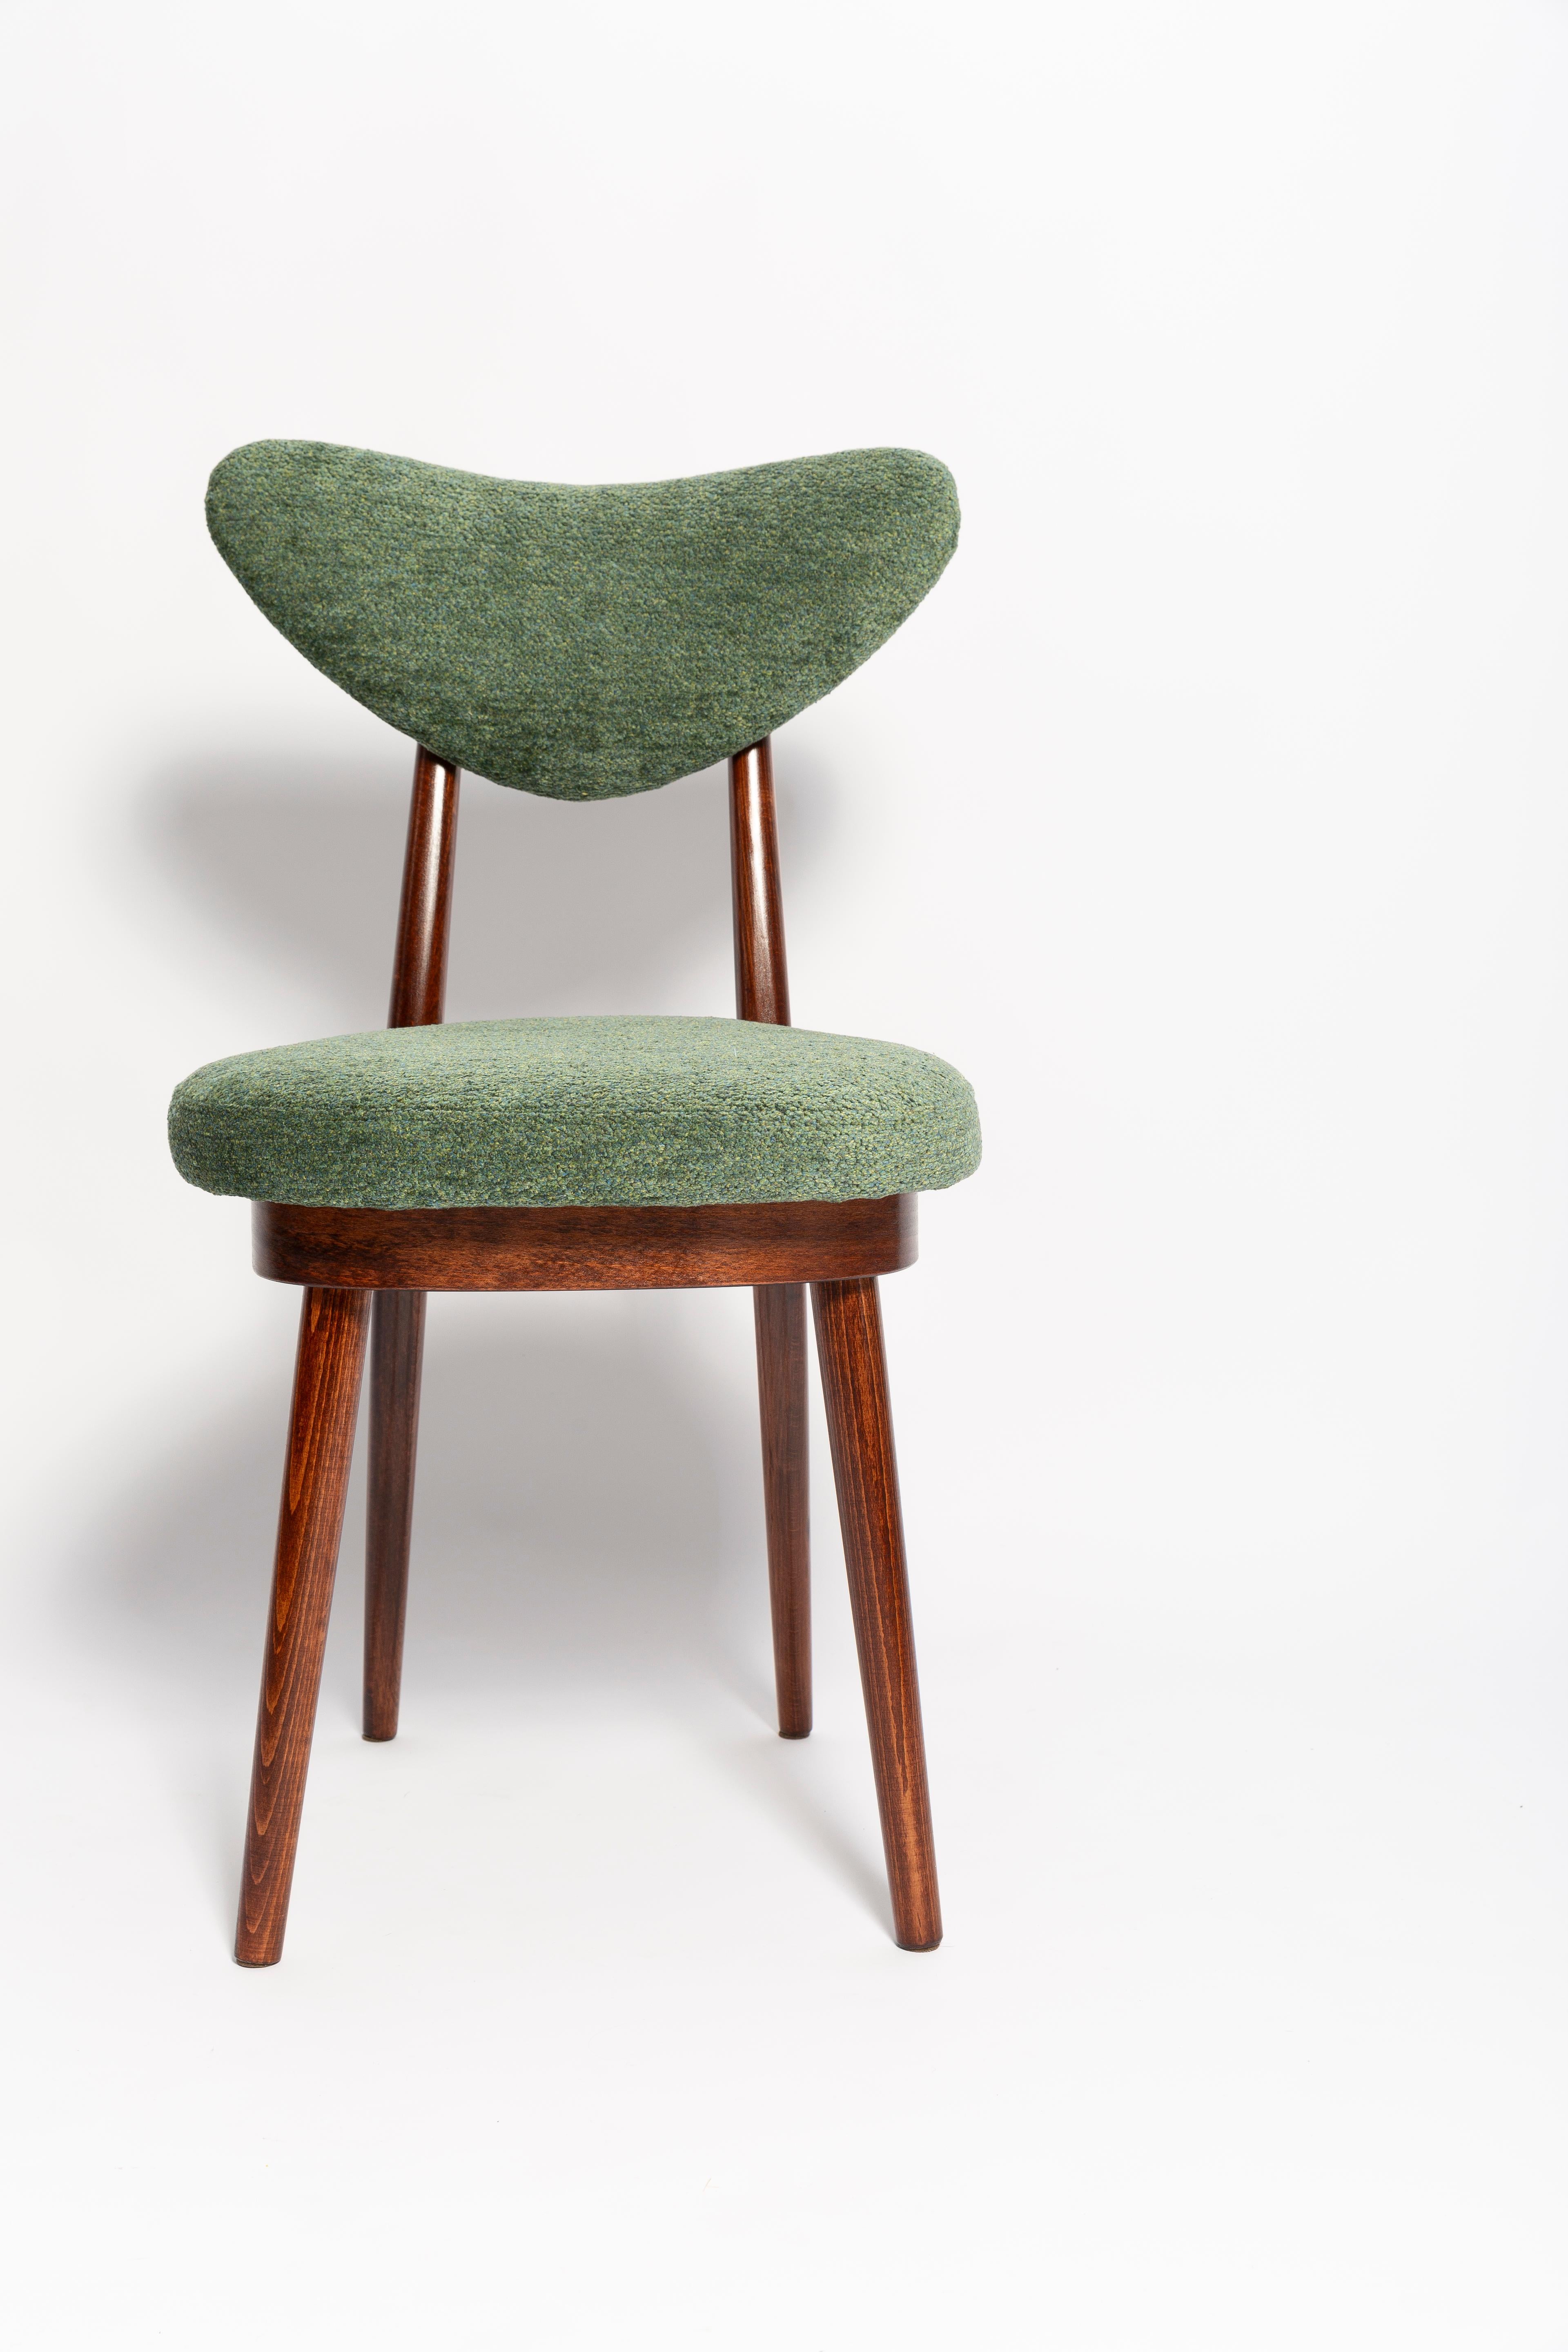 20th Century Mid Century Heart Chair, Green Velvet, Dark Wood, Europe 1960s For Sale